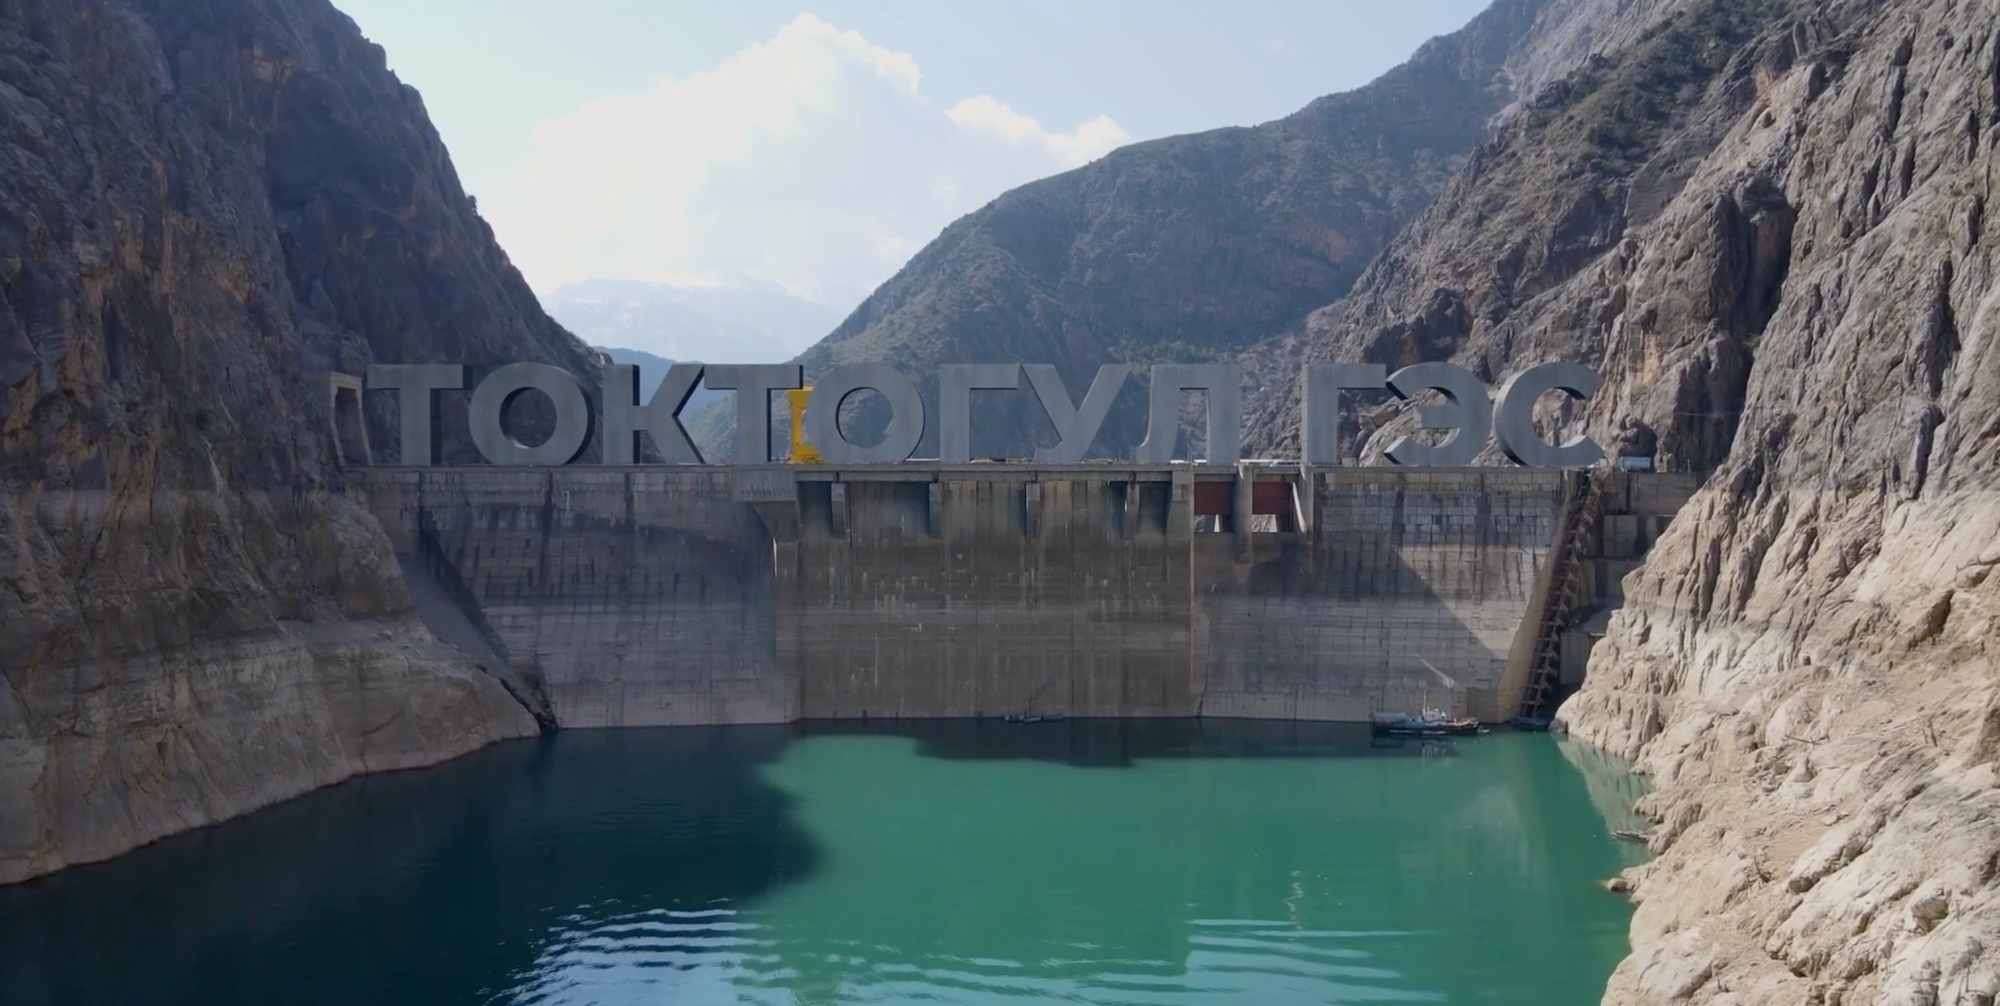 Объем воды в Токтогульском водохранилище сократился почти до 9 млрд м³